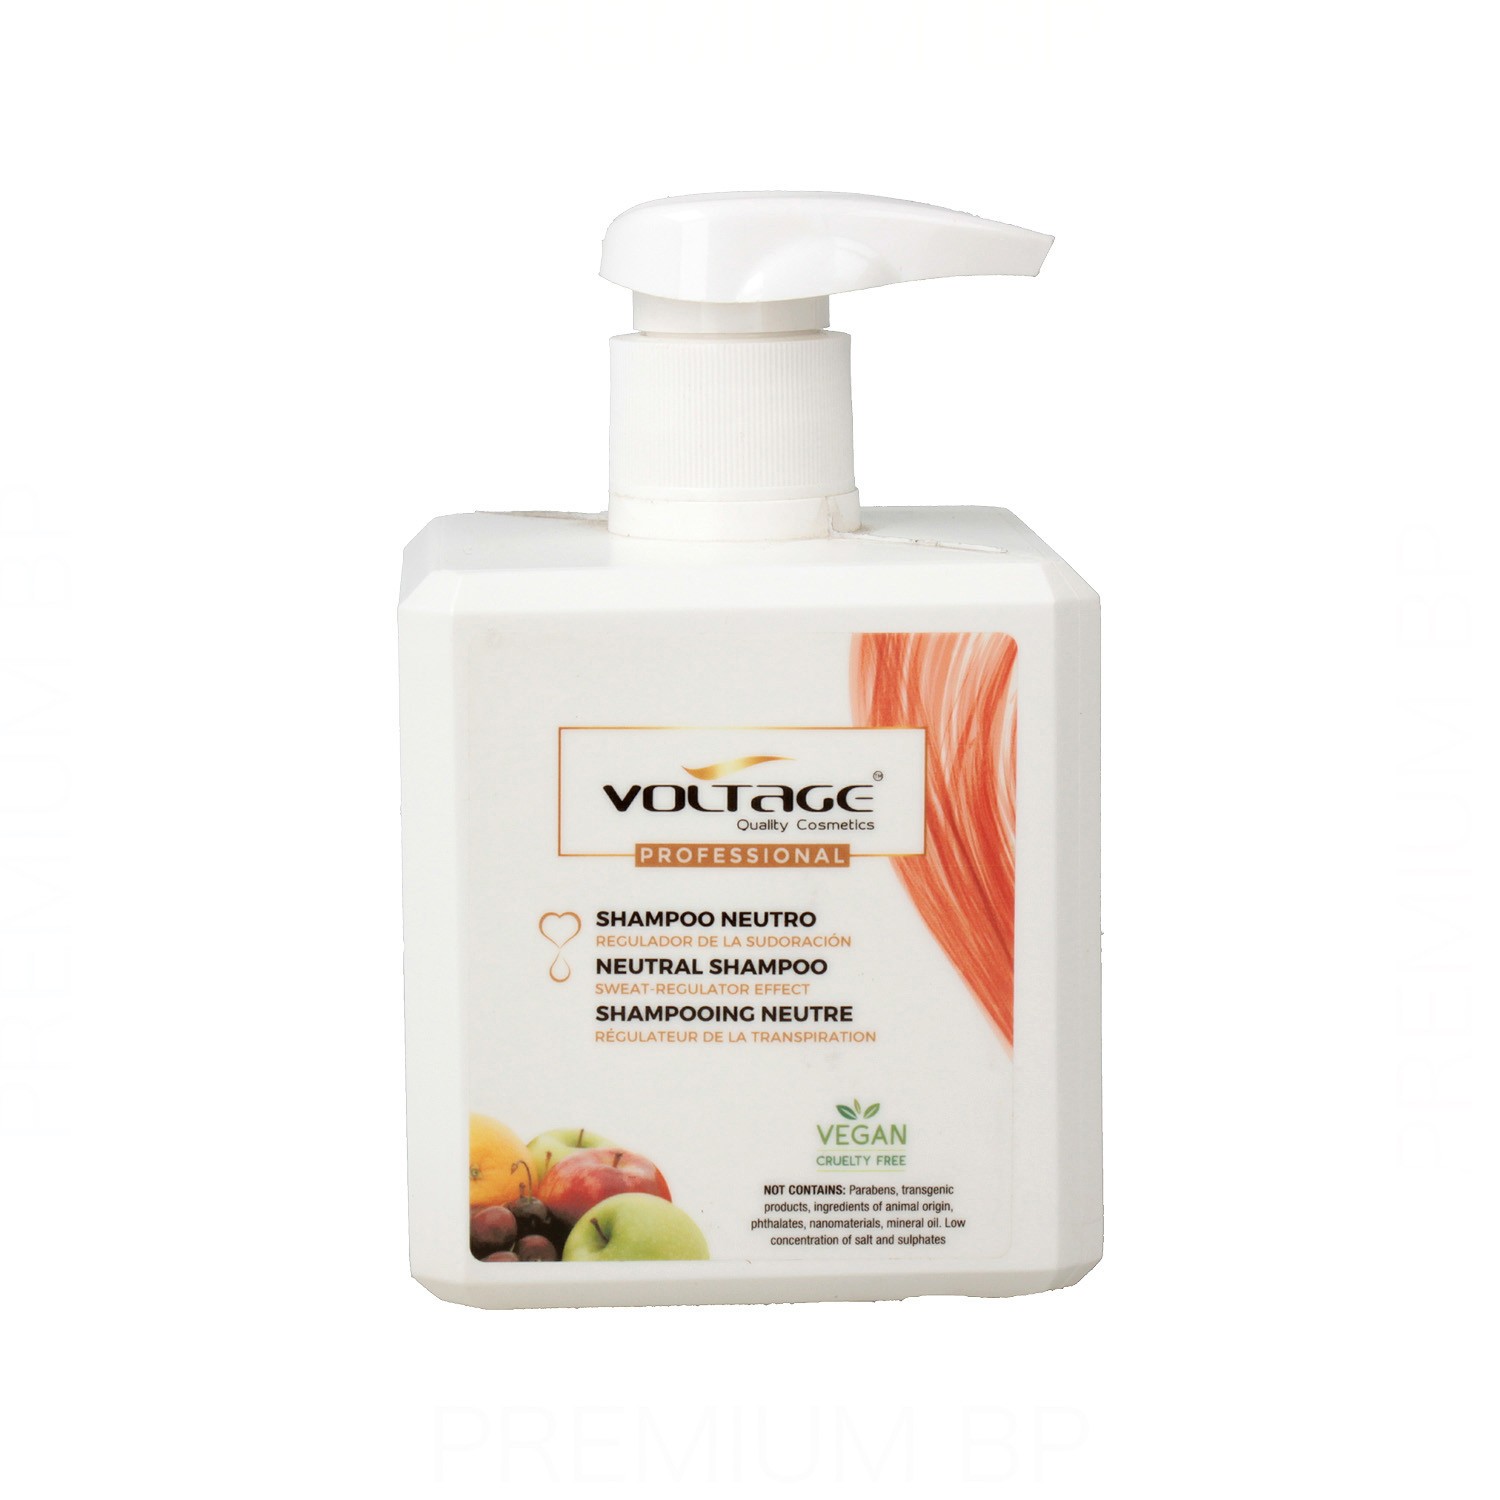 Voltage Profesional Neutro Shampoo 450 ml